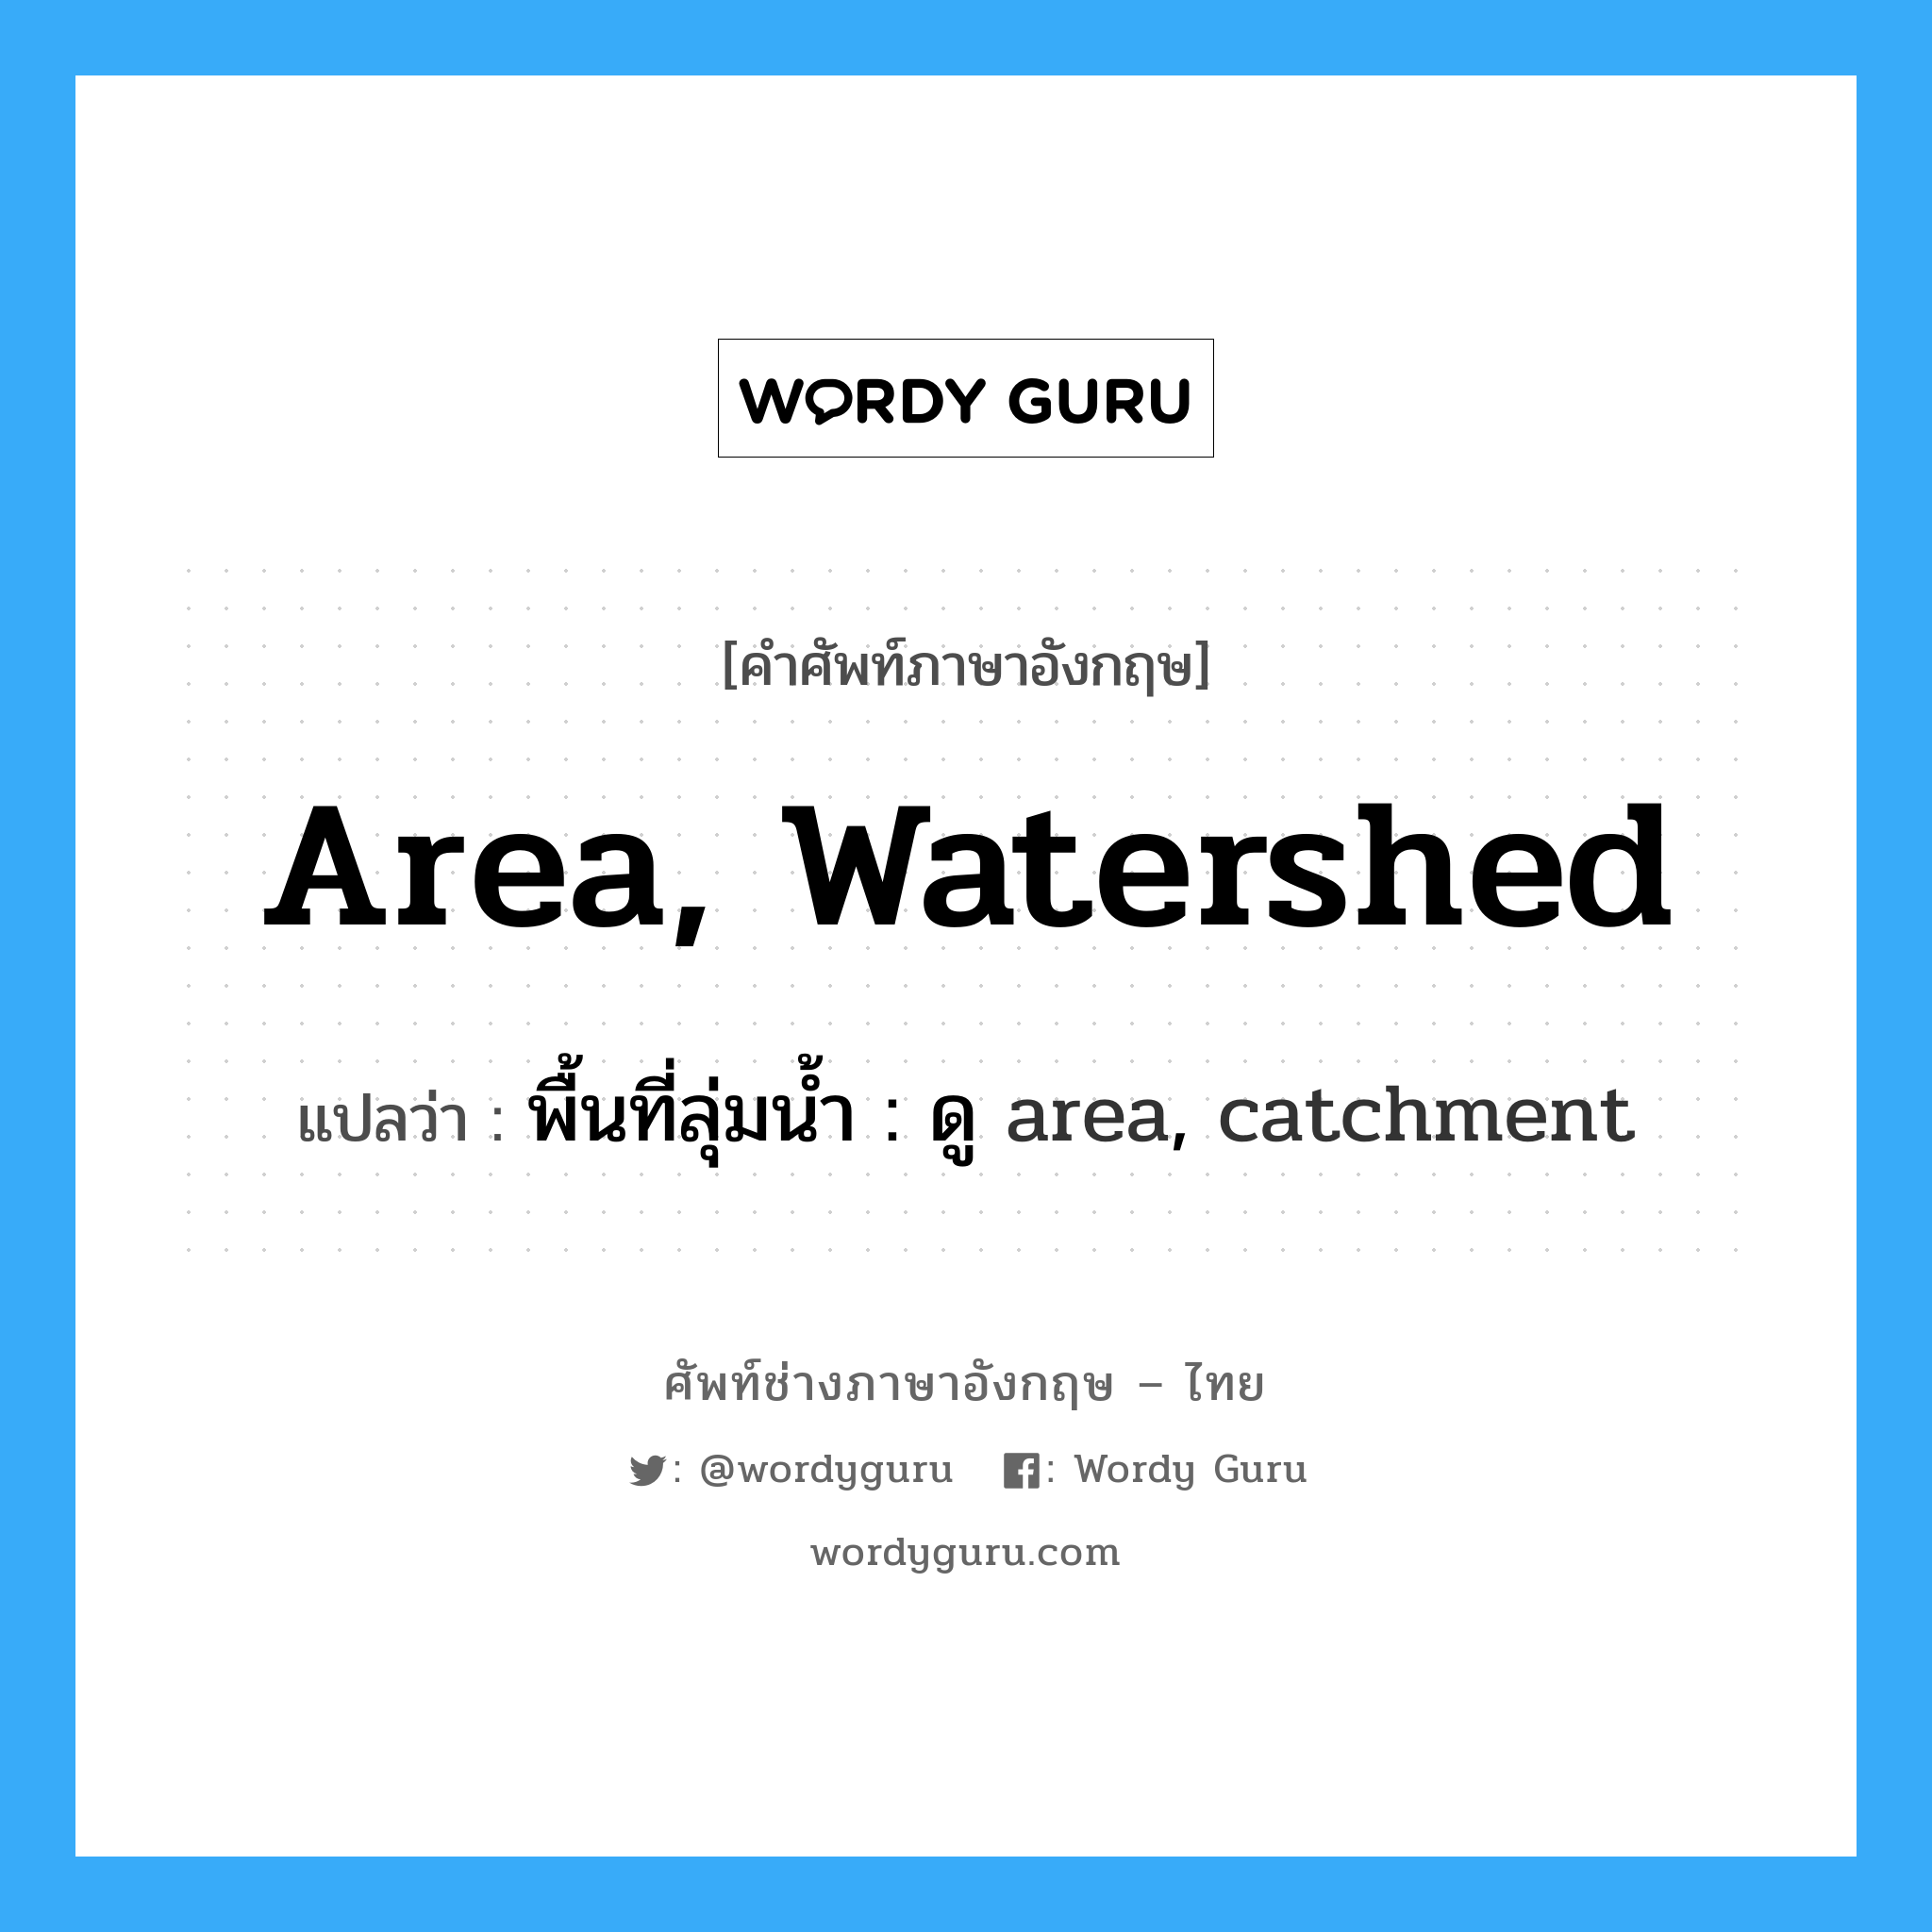 พื้นที่ลุ่มน้ำ : ดู area, catchment ภาษาอังกฤษ?, คำศัพท์ช่างภาษาอังกฤษ - ไทย พื้นที่ลุ่มน้ำ : ดู area, catchment คำศัพท์ภาษาอังกฤษ พื้นที่ลุ่มน้ำ : ดู area, catchment แปลว่า area, watershed